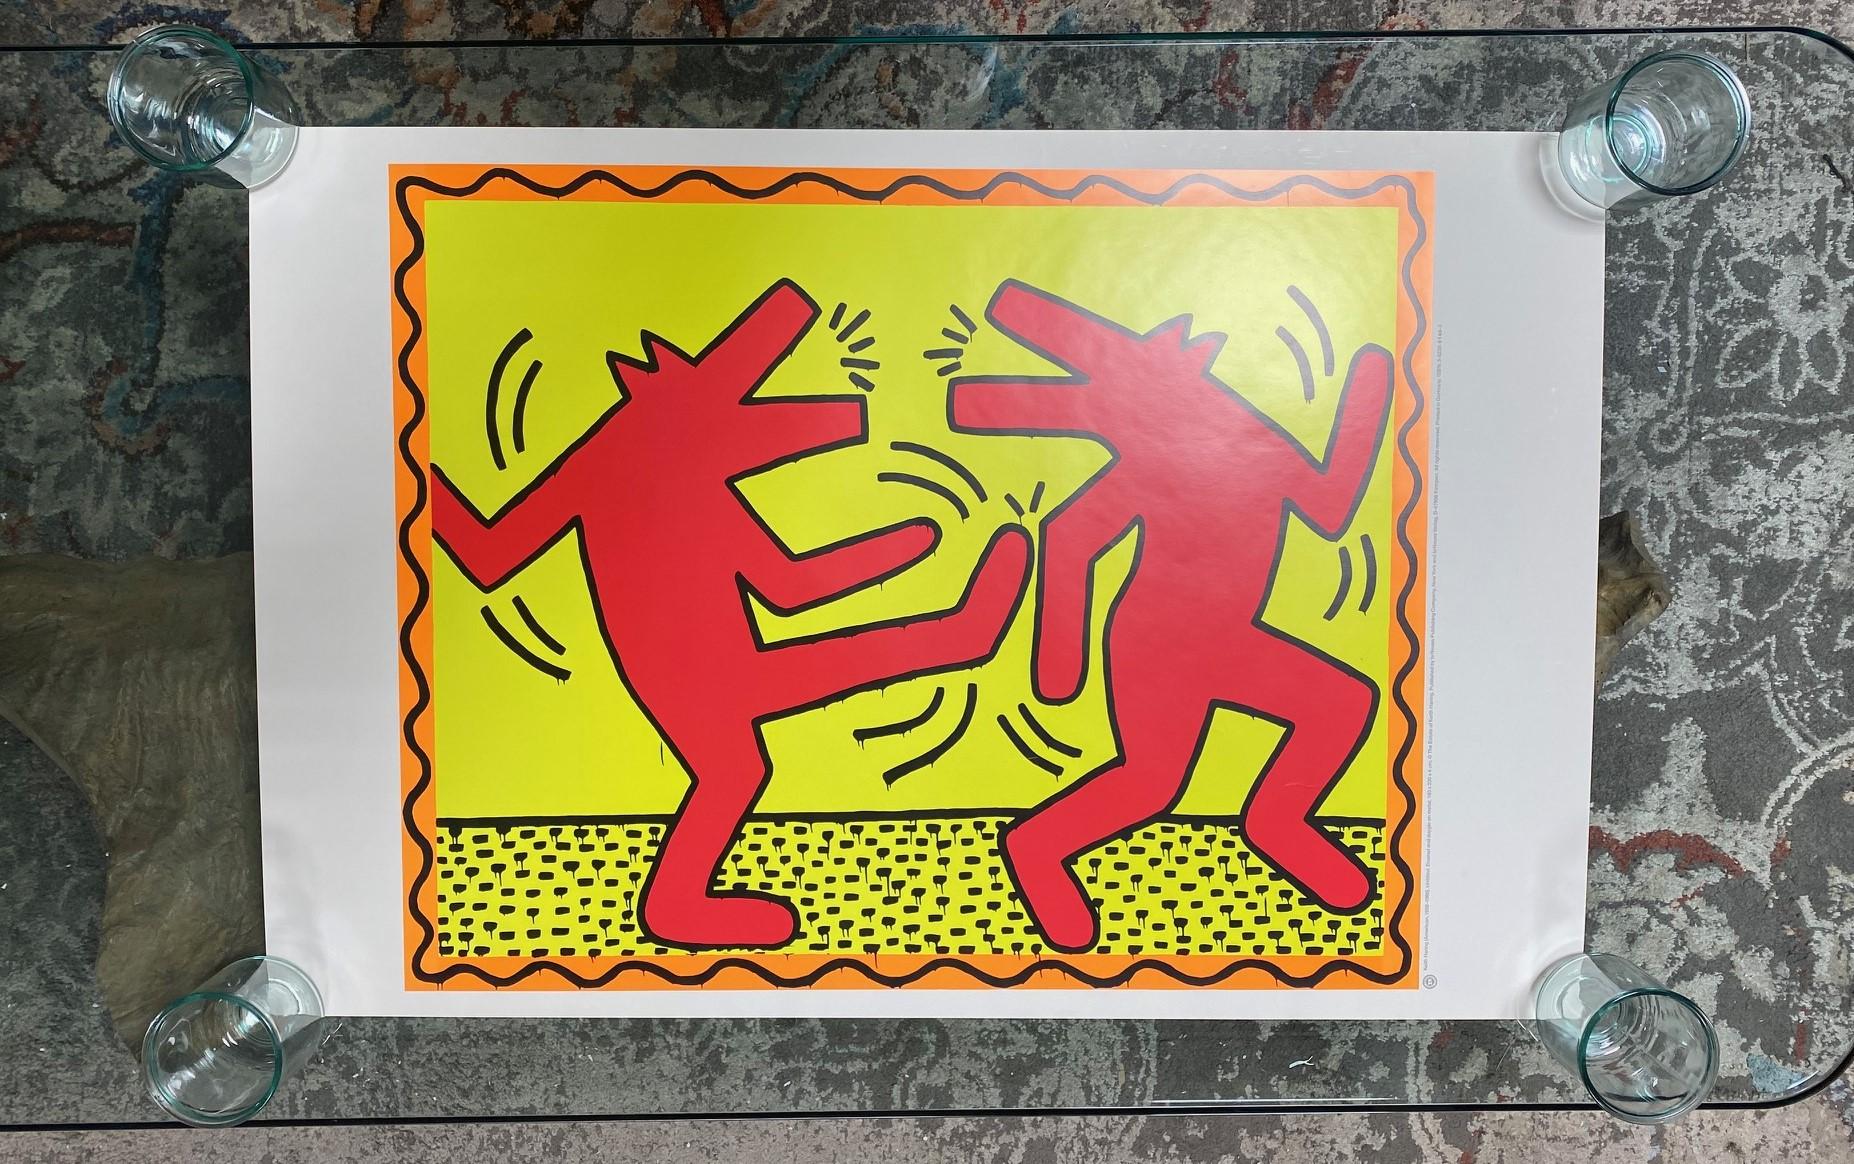 Ein seltenes und extrem schwer zu findendes limitiertes Vintage Keith Haring (1958-1990) Pop Art Offsetlithographie-Poster mit einem seiner begehrtesten Bilder von zwei tanzenden Hunden/Wölfen aus einem von Haring 1982 geschaffenen Kunstwerk.  Das